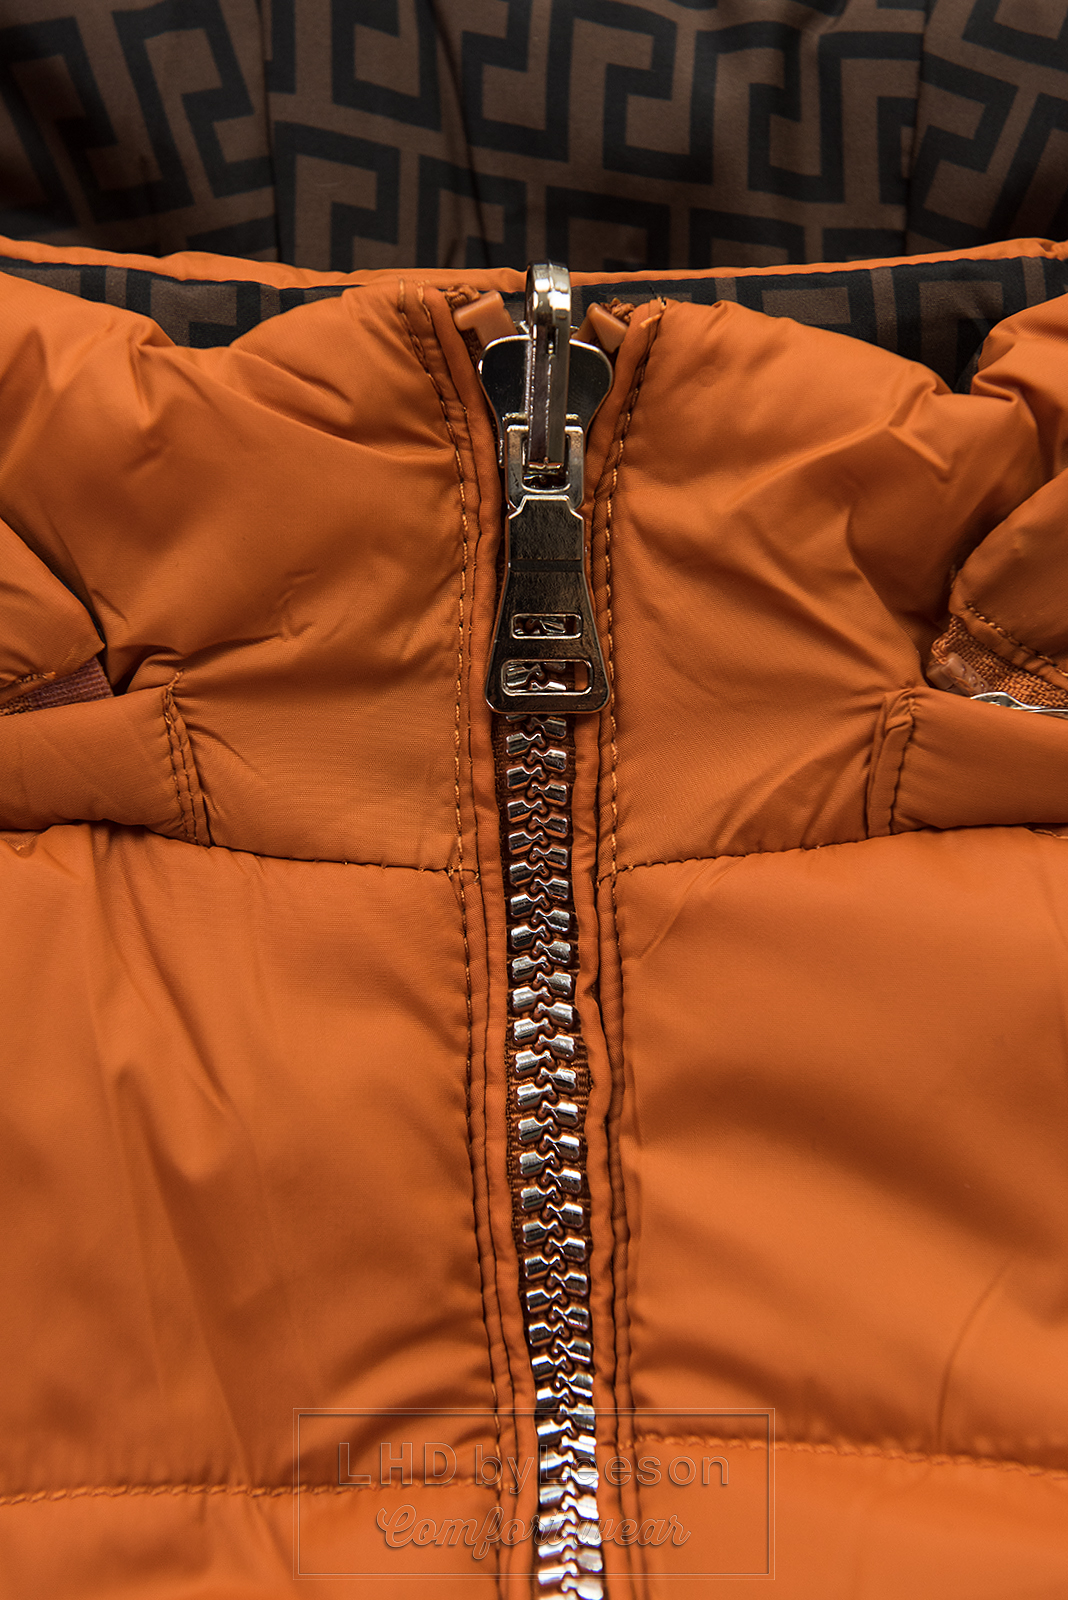 Ceglasto-pomarańczowa/brązowa dwustronna kurtka z ociepliną